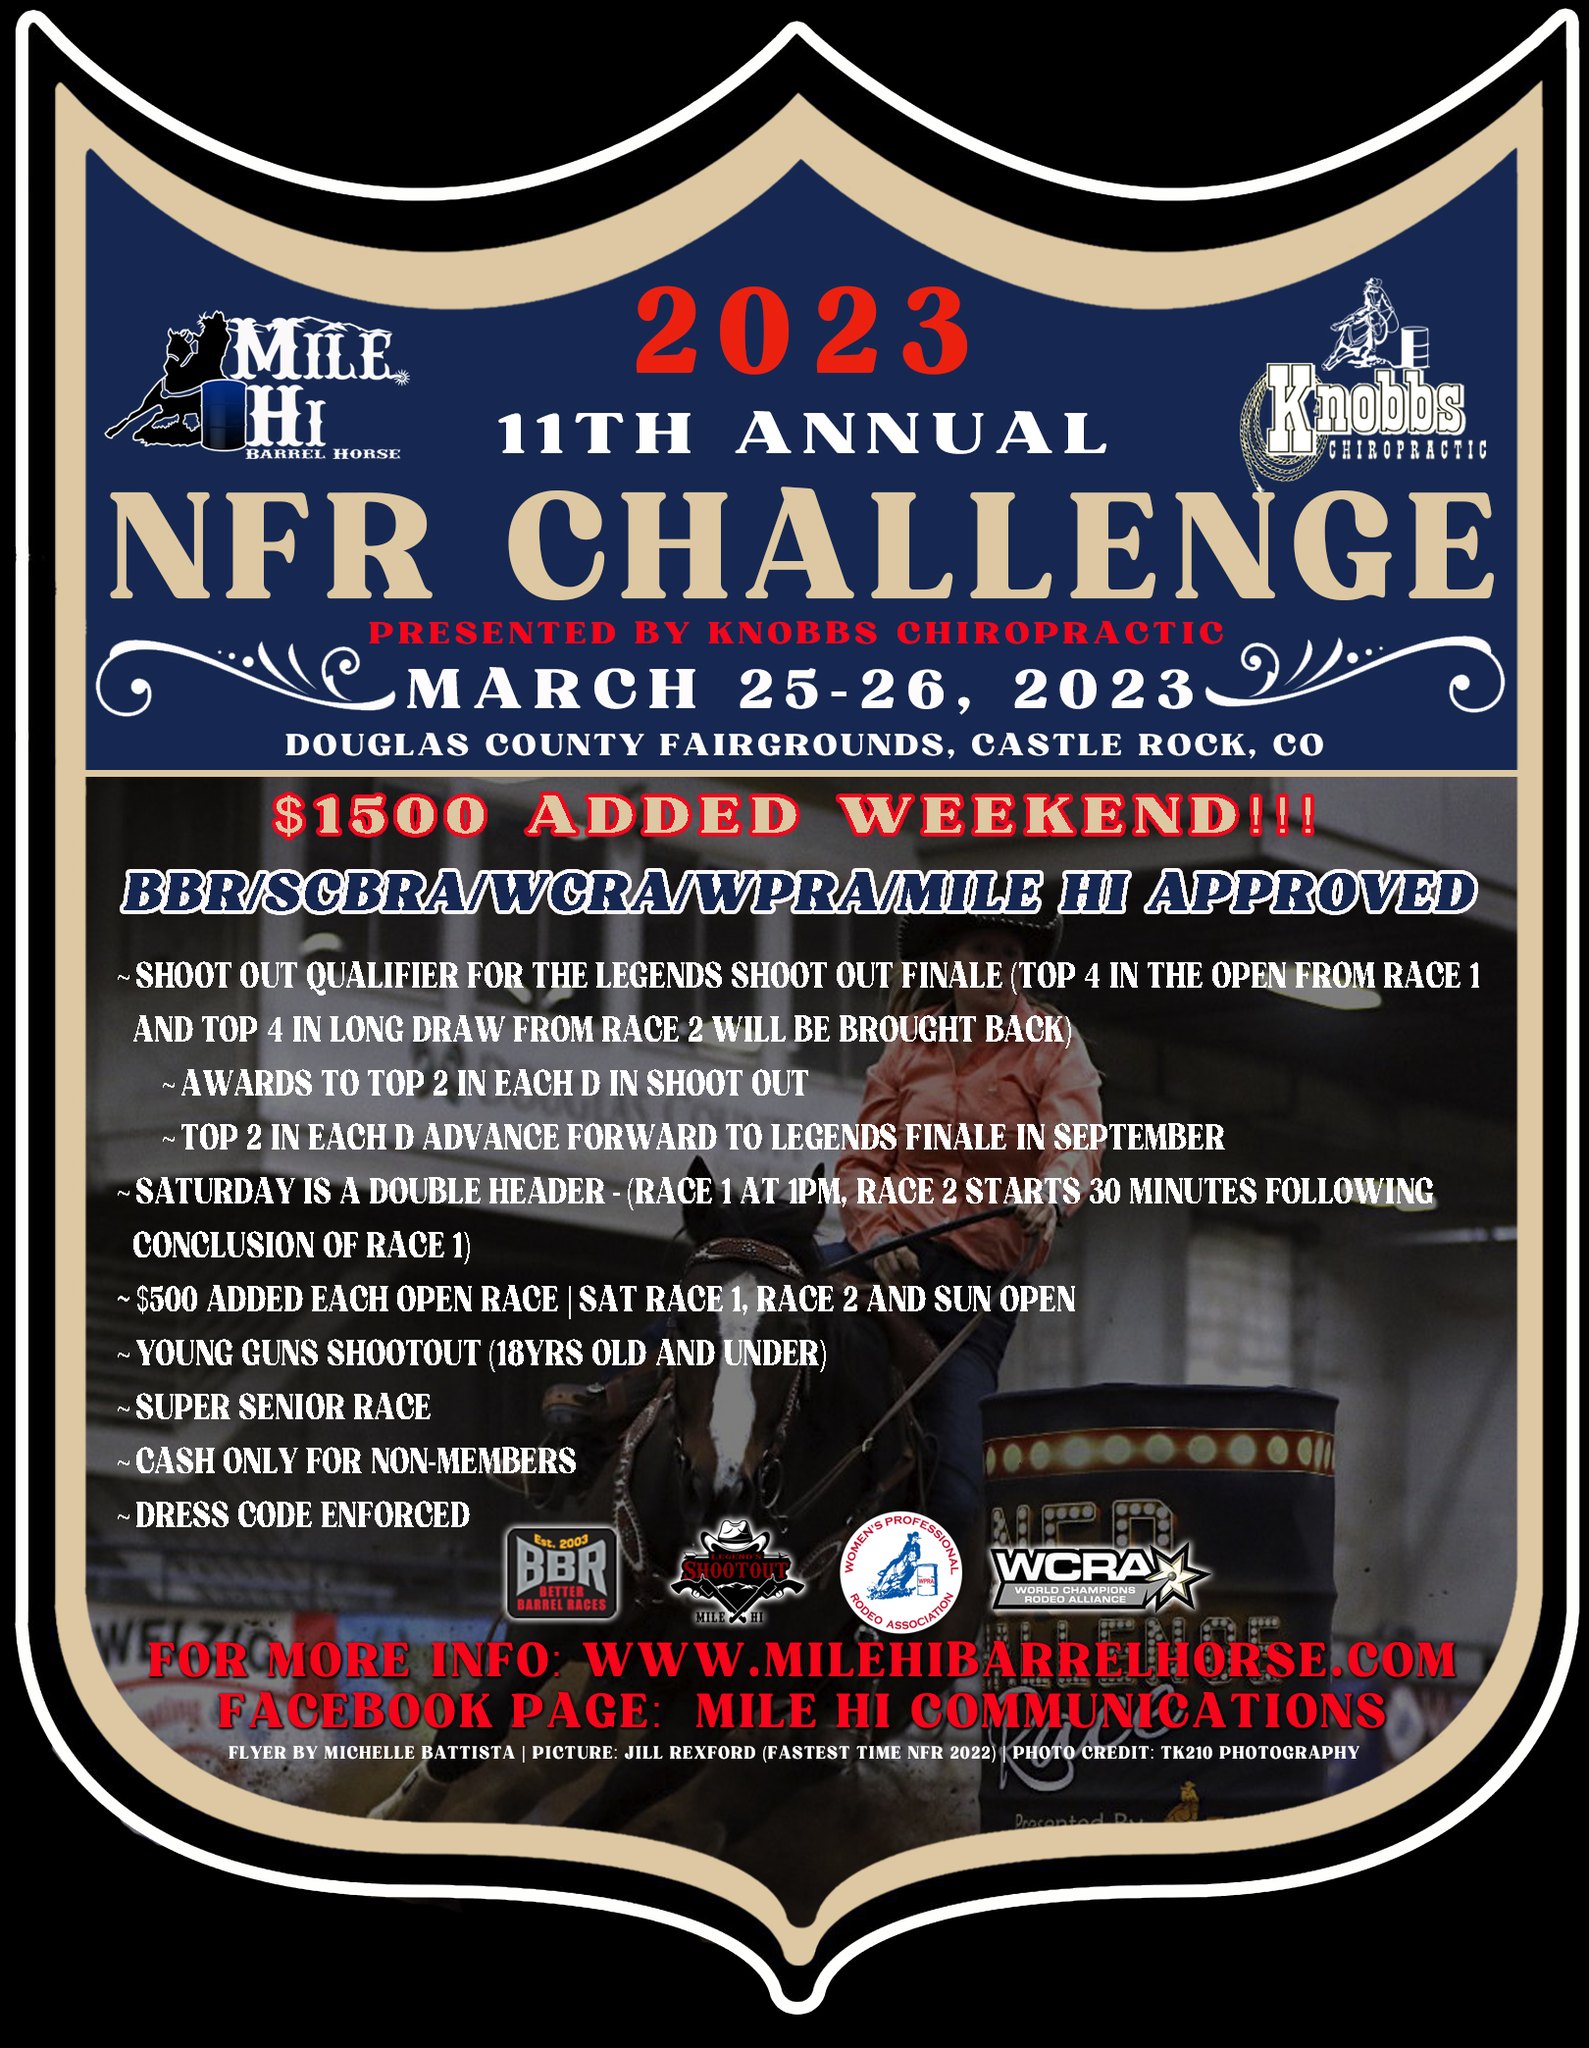 Mile Hi NFR Challenge